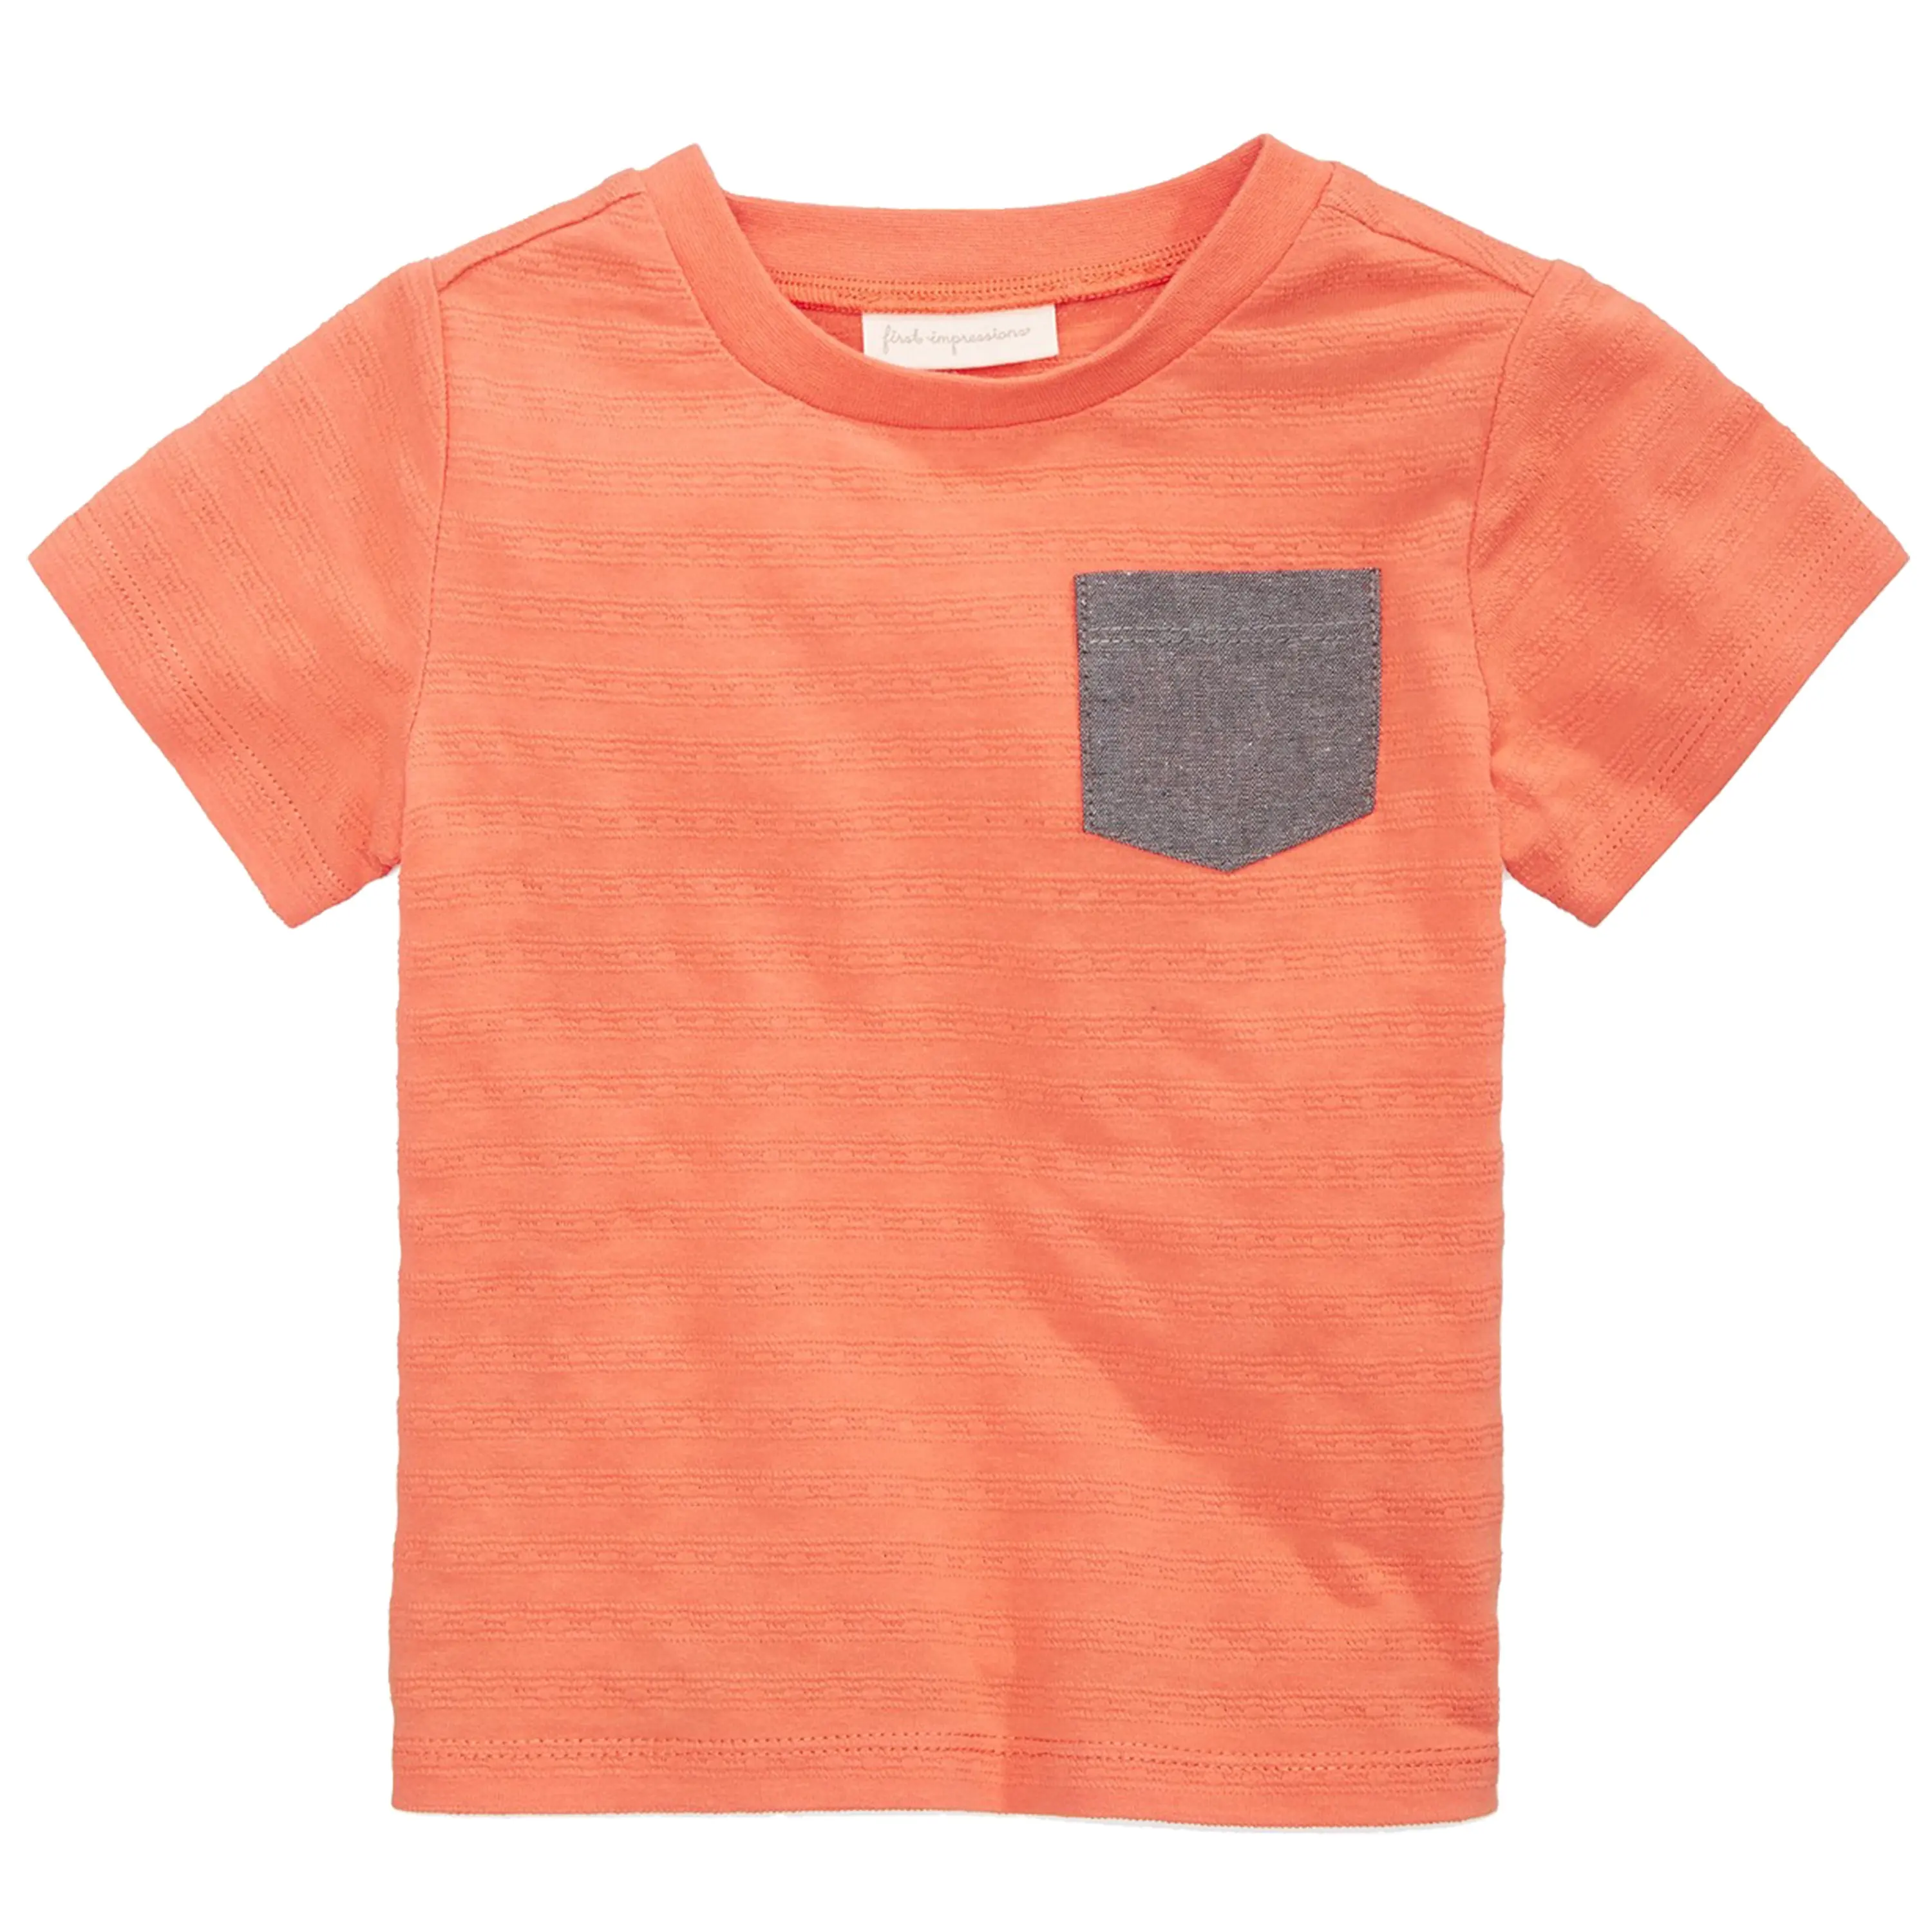 थोक डिजाइन लड़कों बच्चों फैंसी गर्मियों लघु आस्तीन 100% कपास टी शर्ट